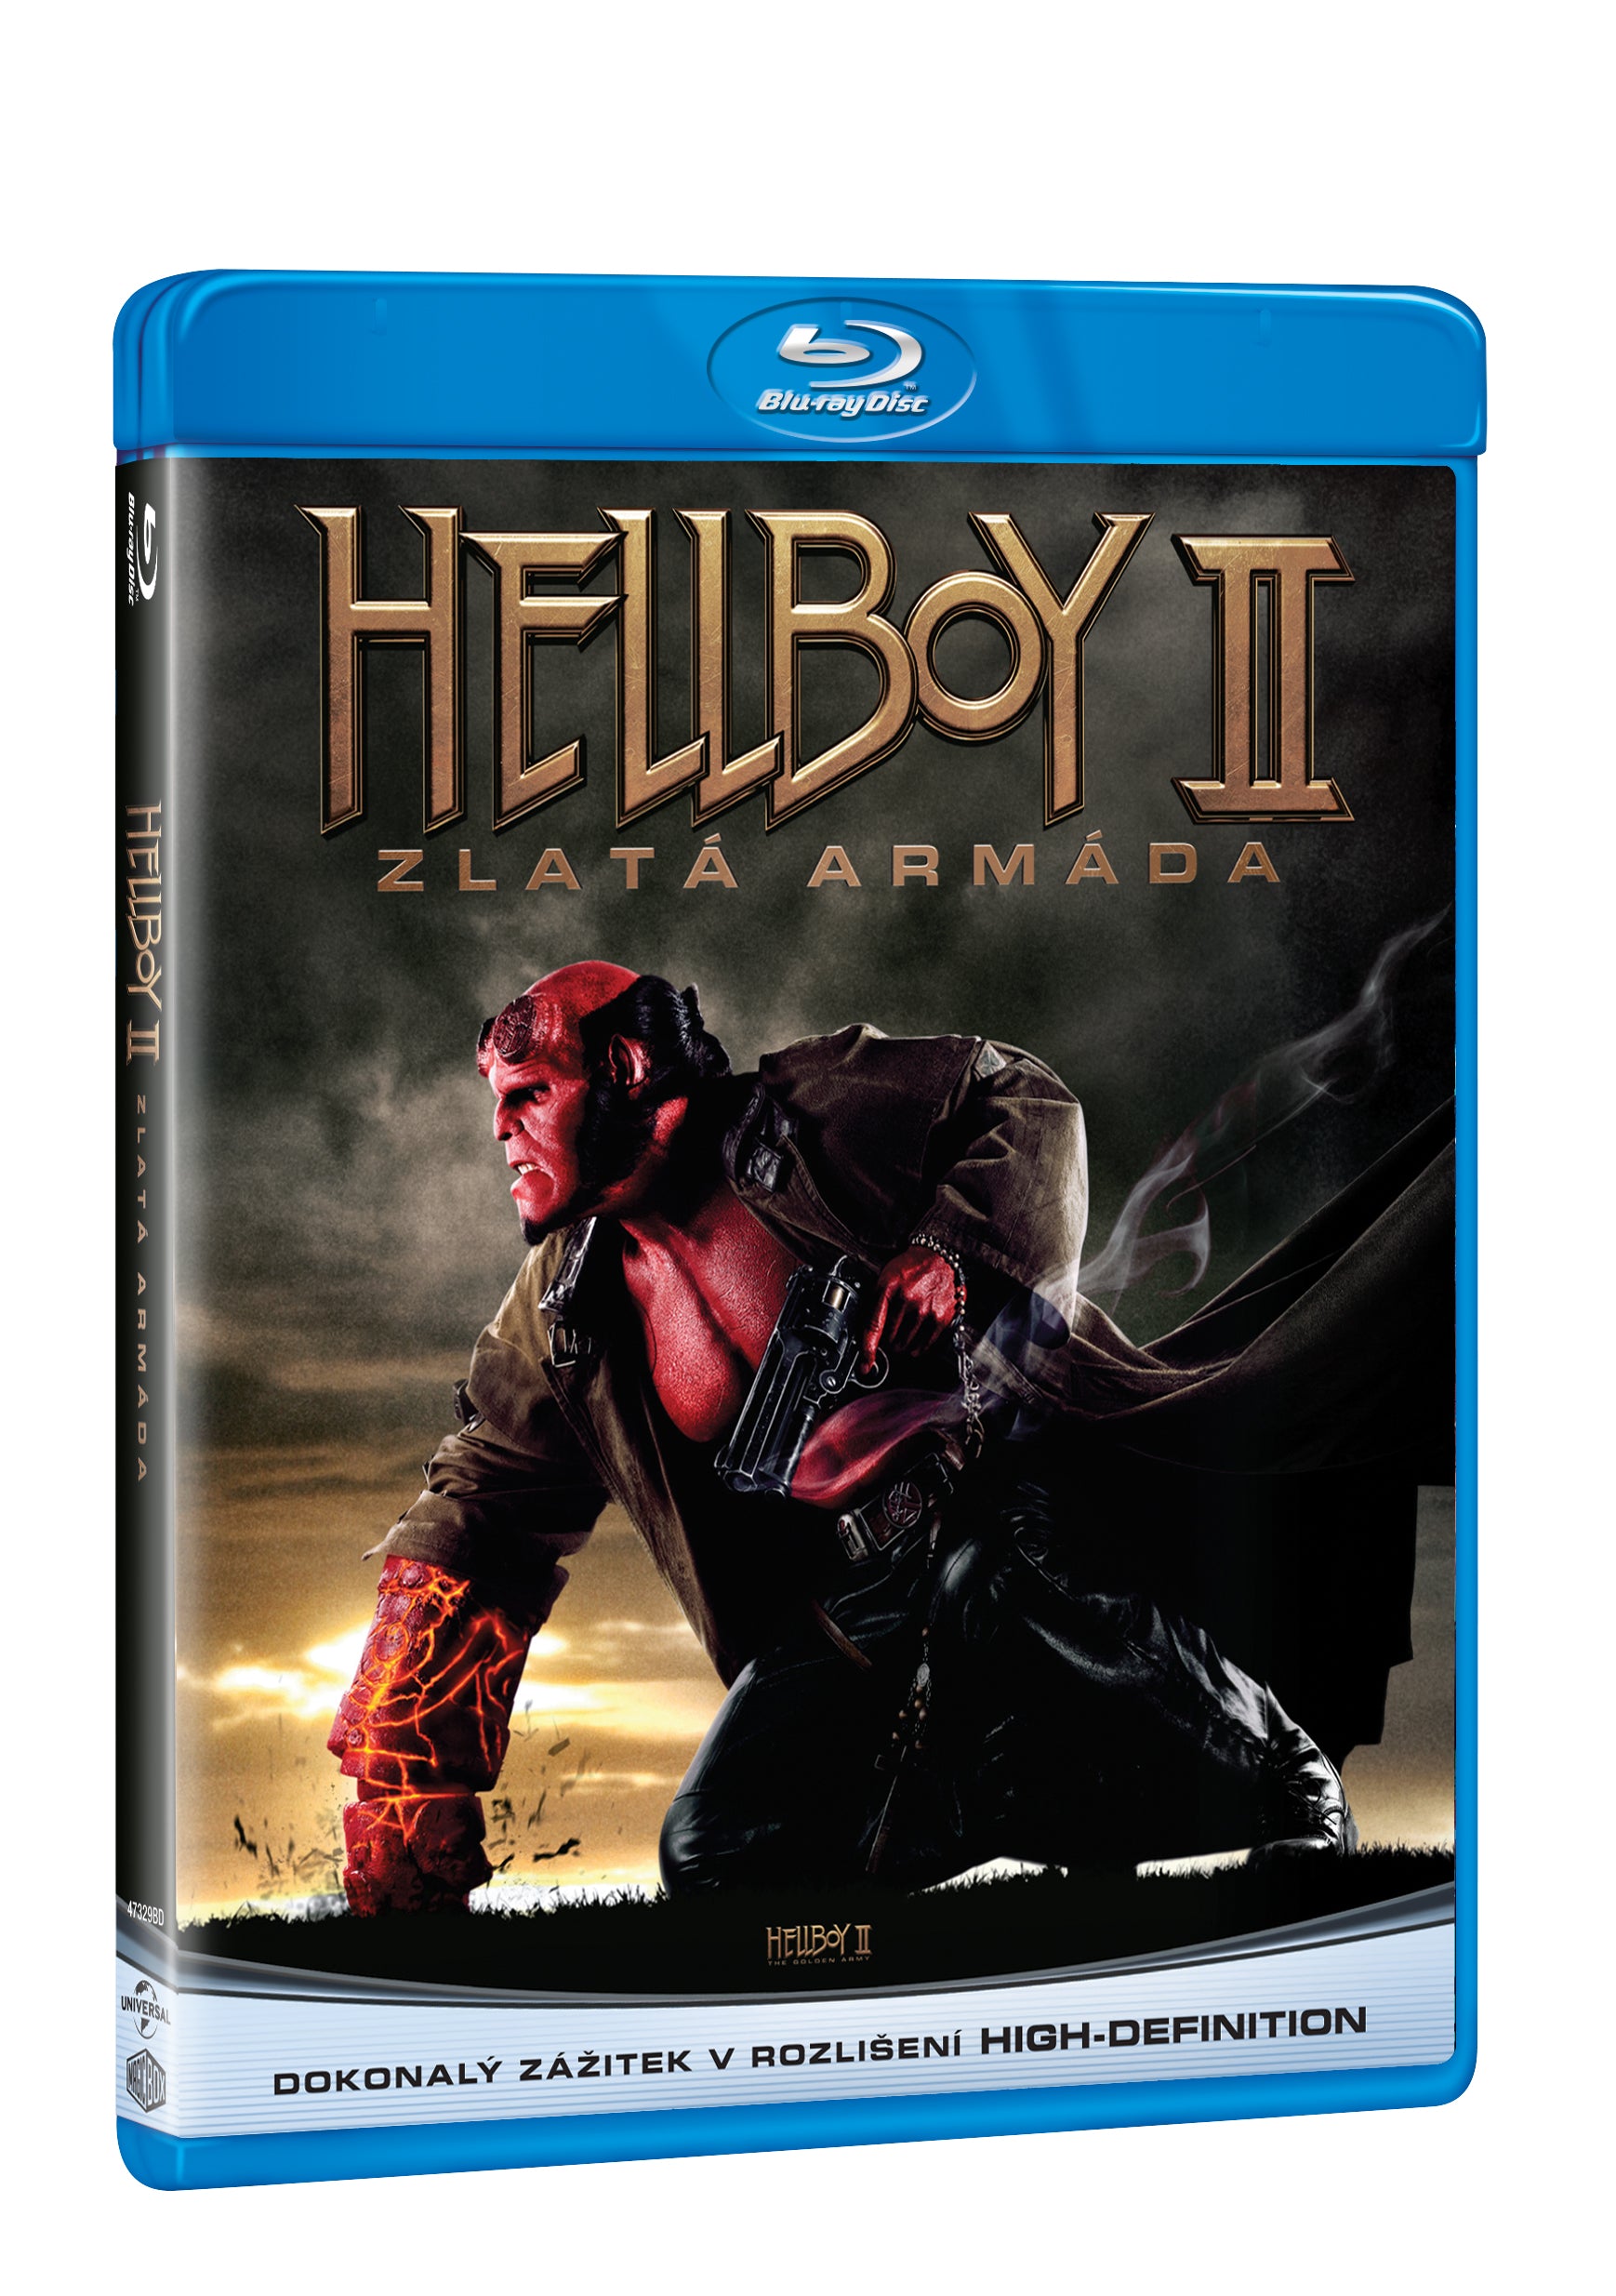 Hellboy 2: Zlata armada BD / Hellboy 2: Zlata armada - Czech version